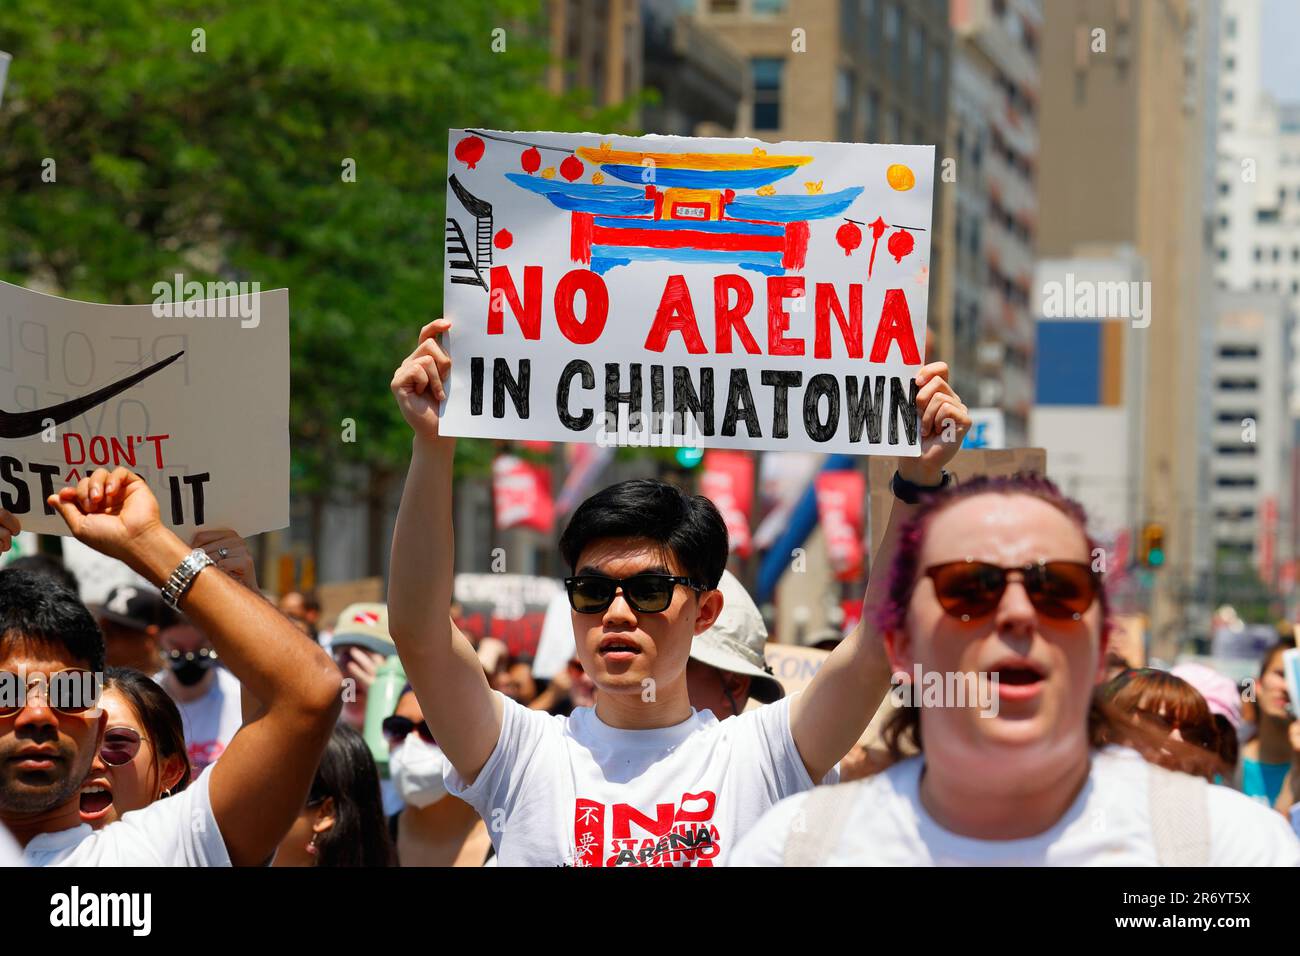 10 giugno 2023, Filadelfia. No Arena a Chinatown protesta marzo. Un uomo tiene un cartello dipinto a mano che si oppone ad uno stadio (vedi informazioni aggiuntive). Foto Stock